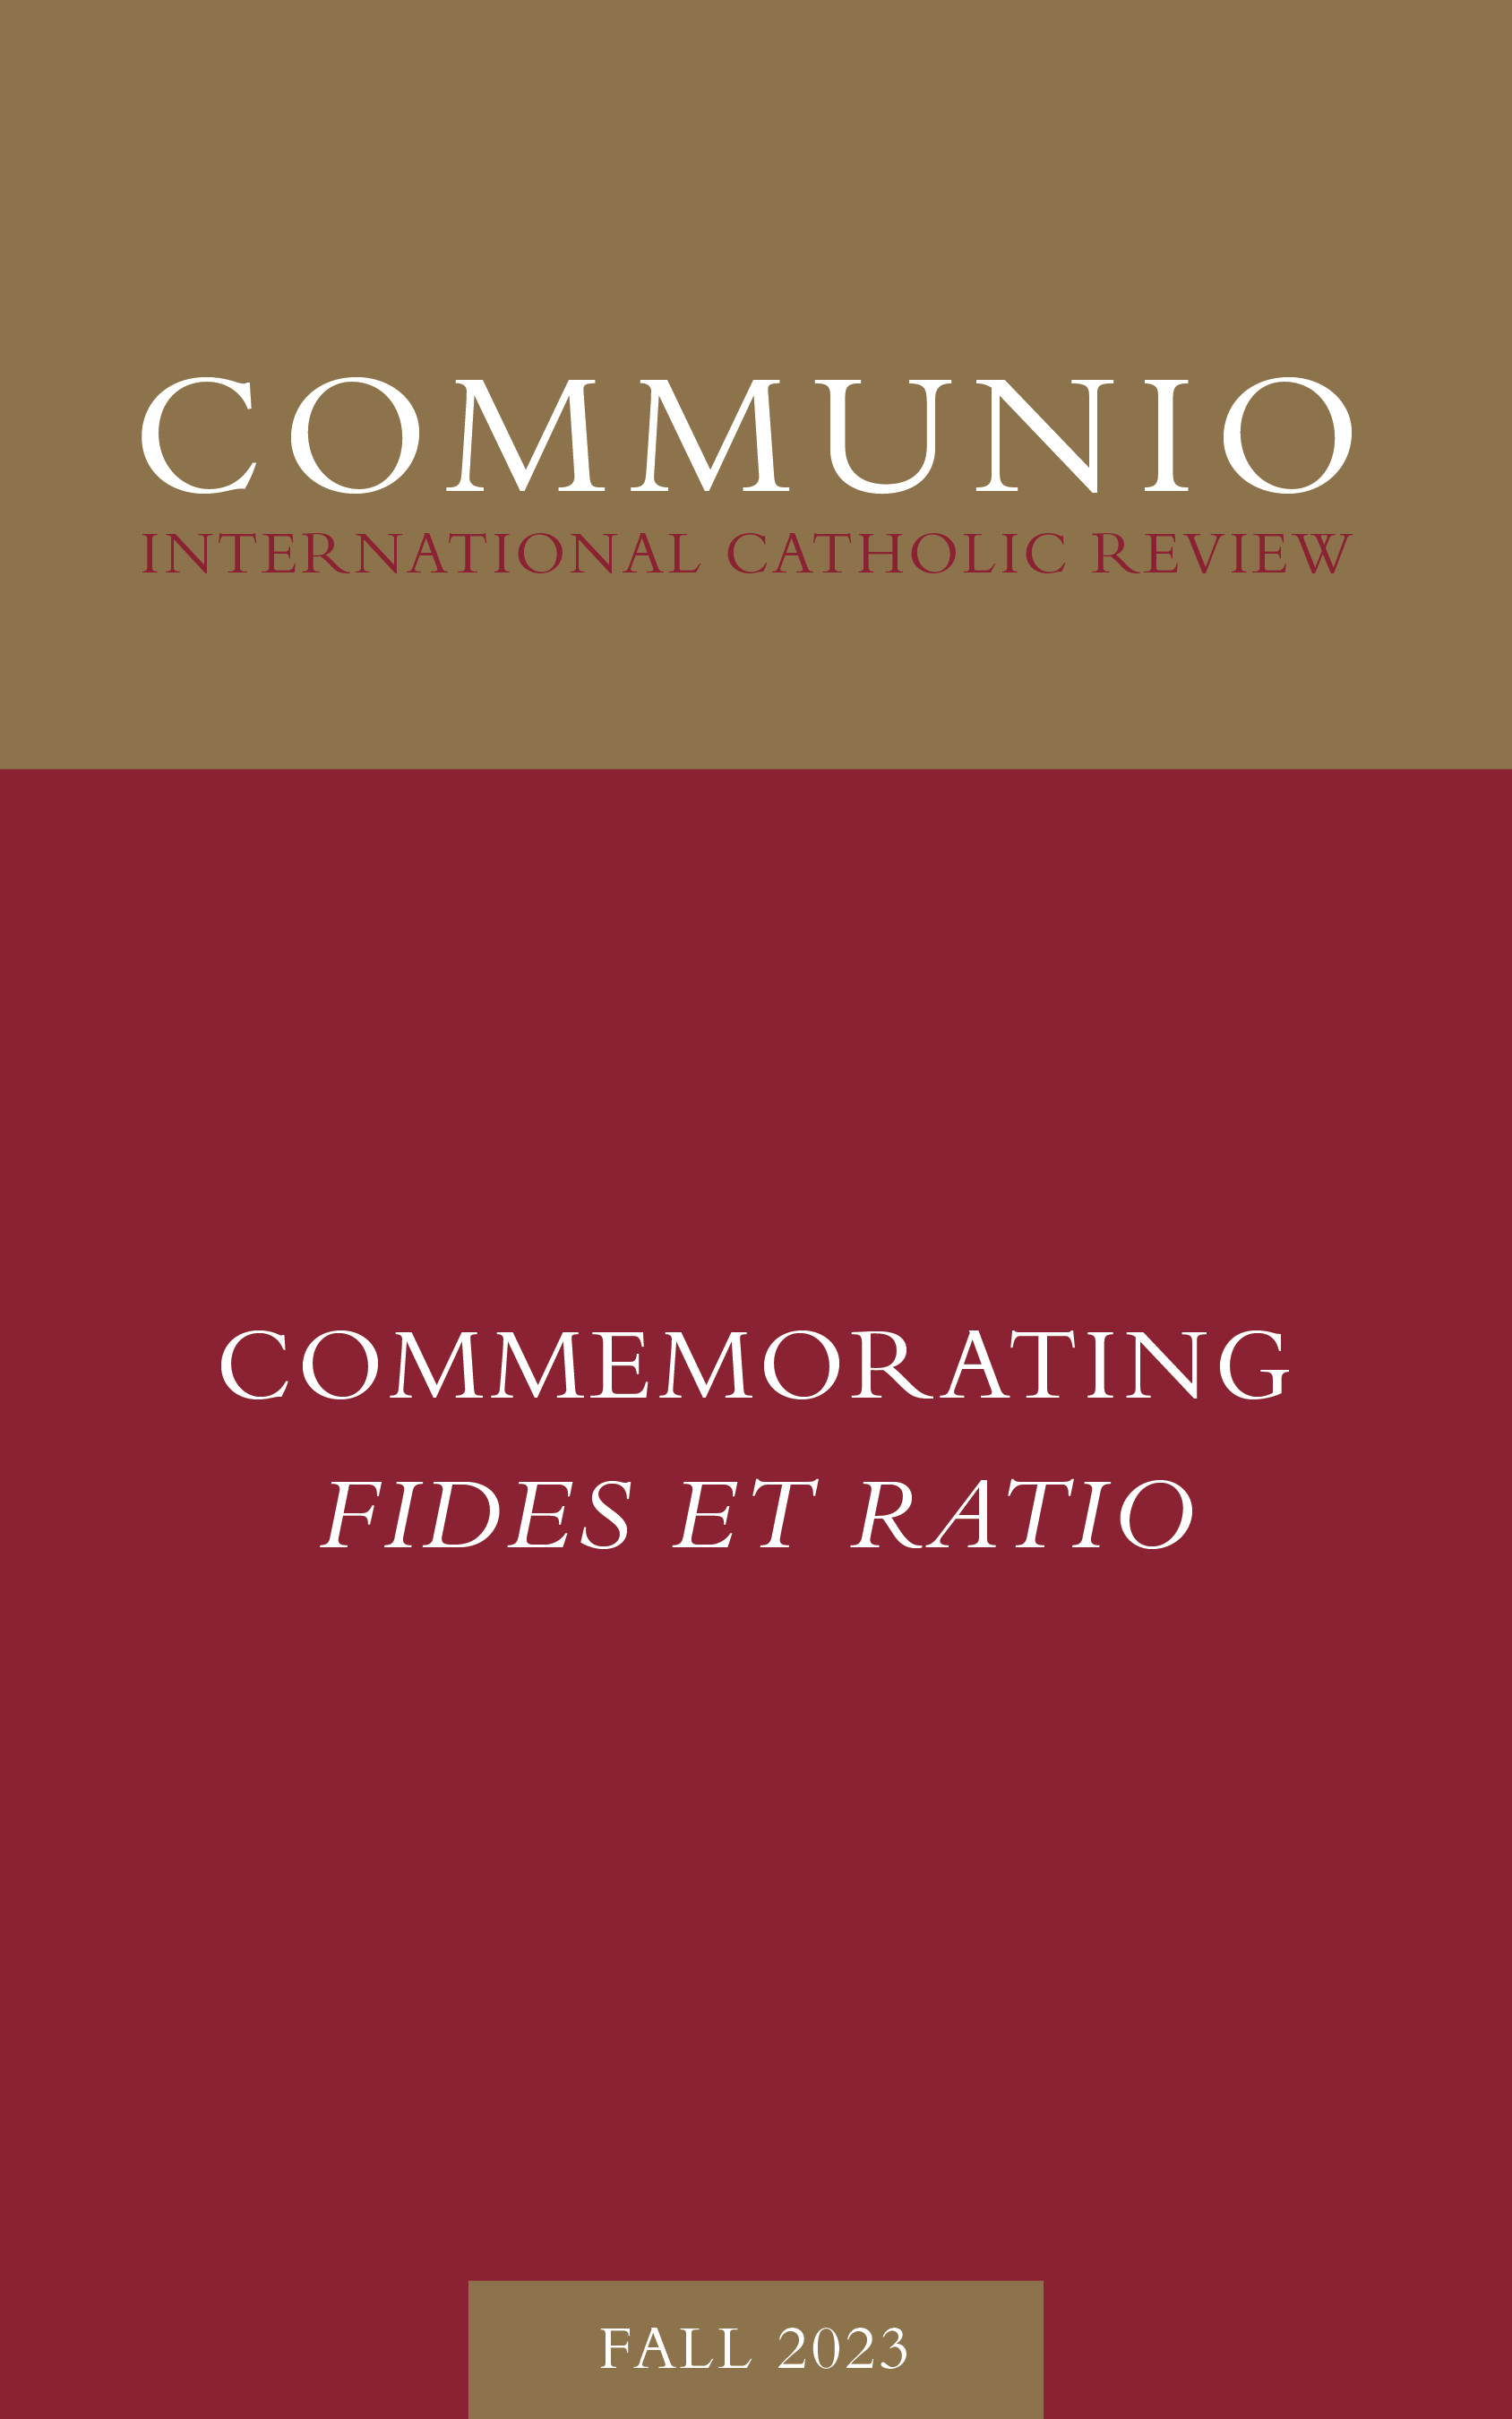 Communio - Fall 2023 - Commemorating Fides et ratio